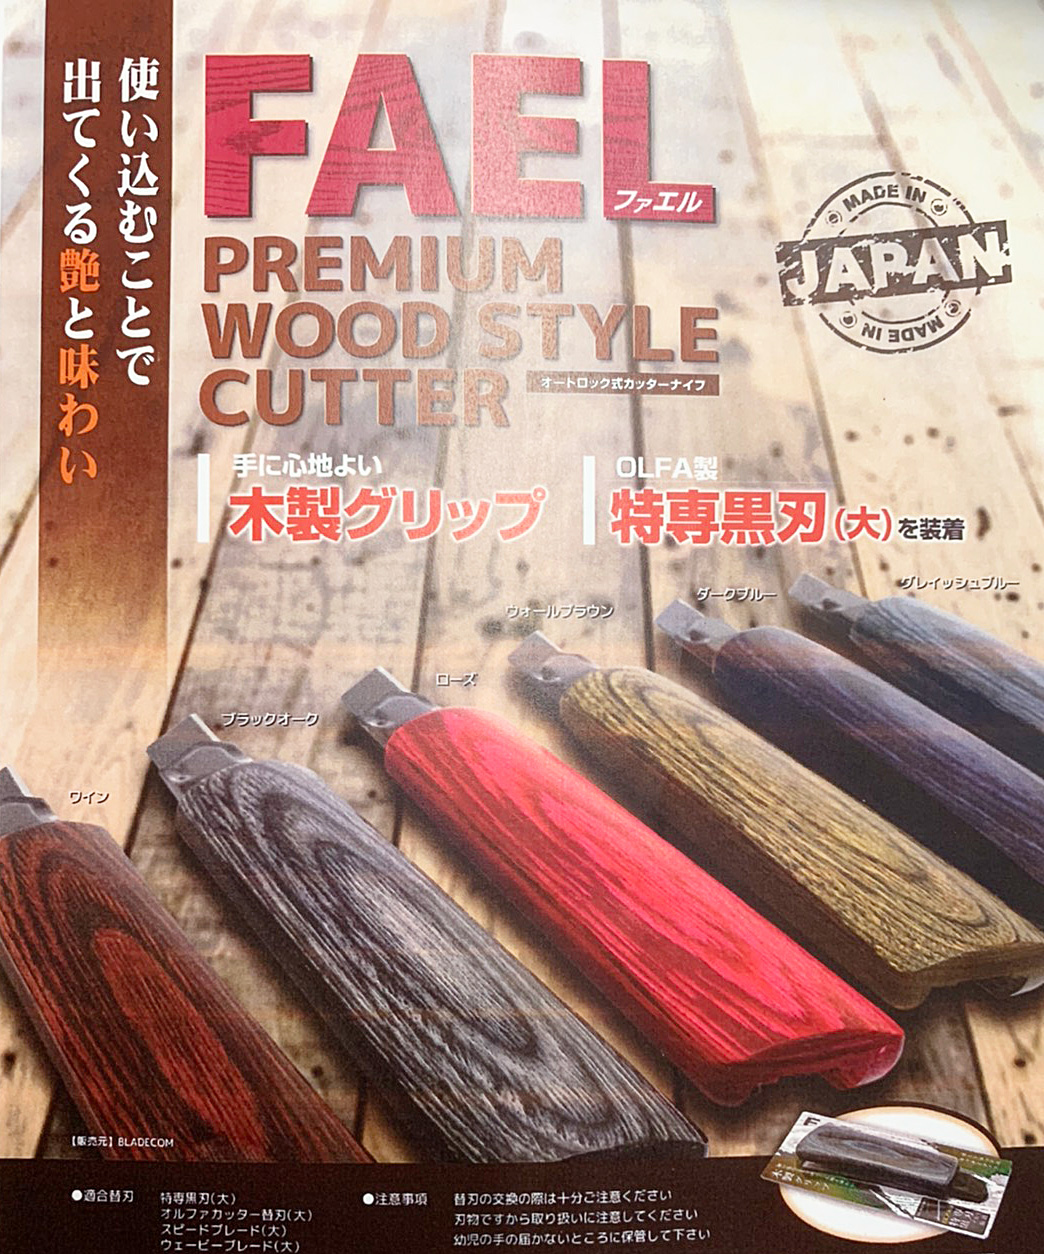 【新商品】FAEL (ファエル) 木製カッター